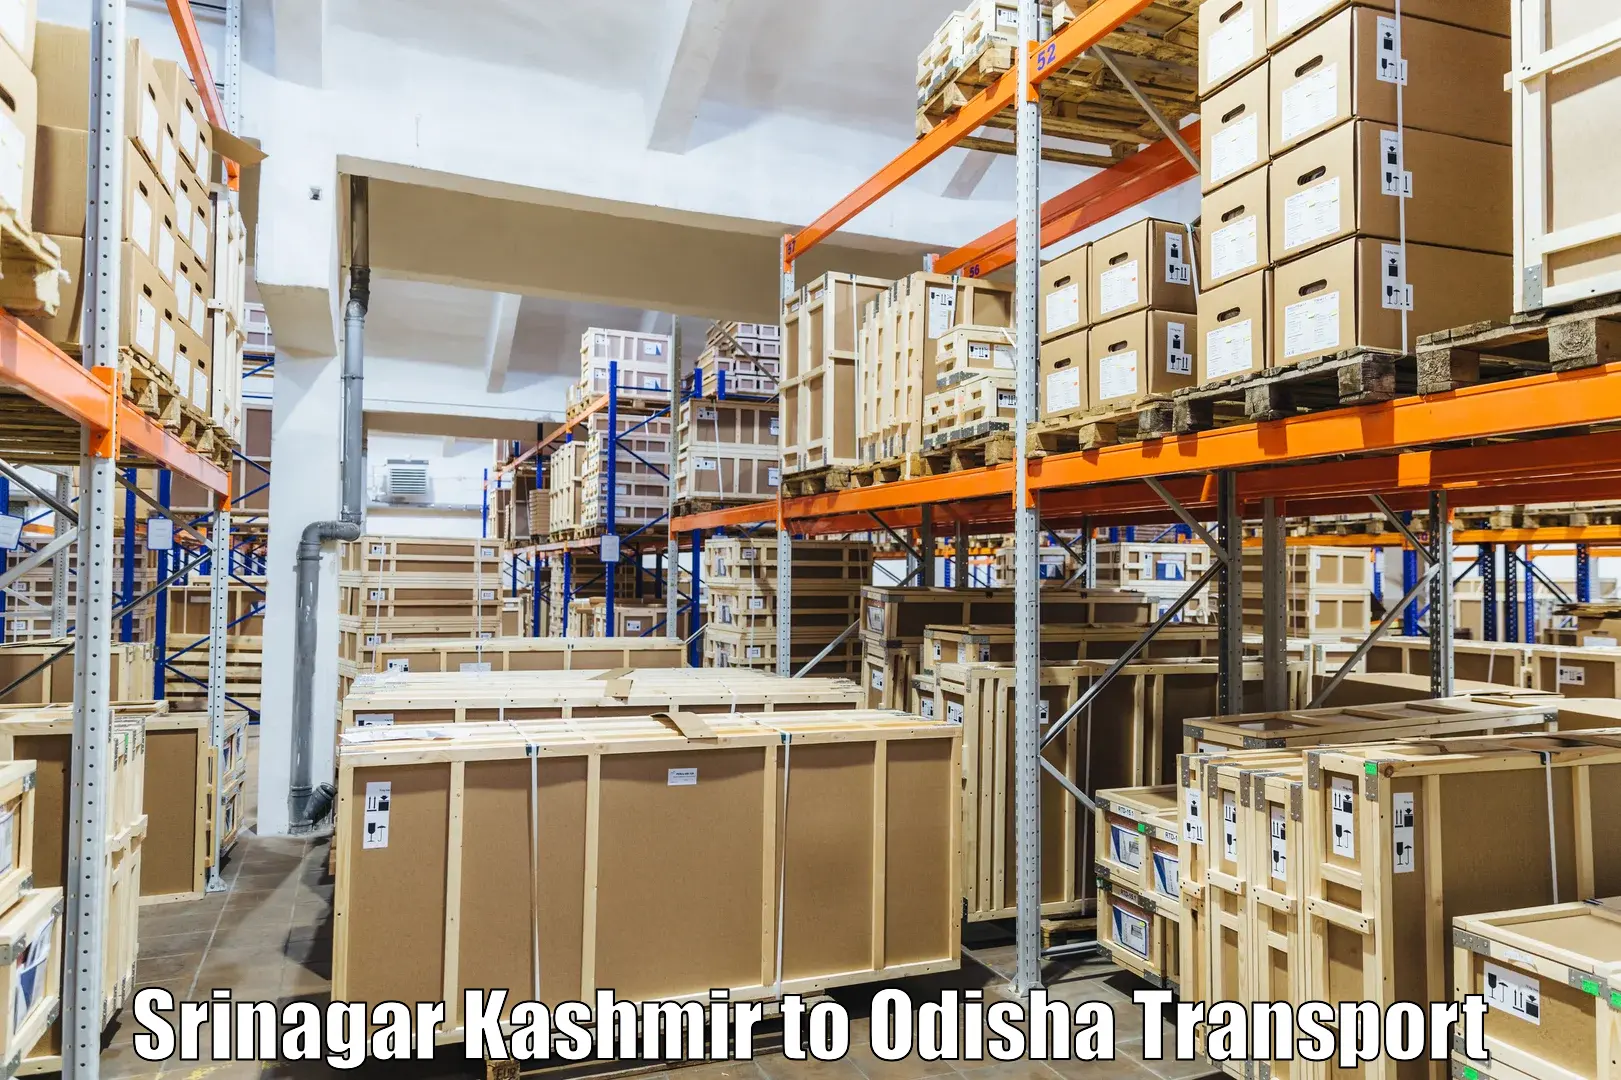 Shipping partner Srinagar Kashmir to Odisha